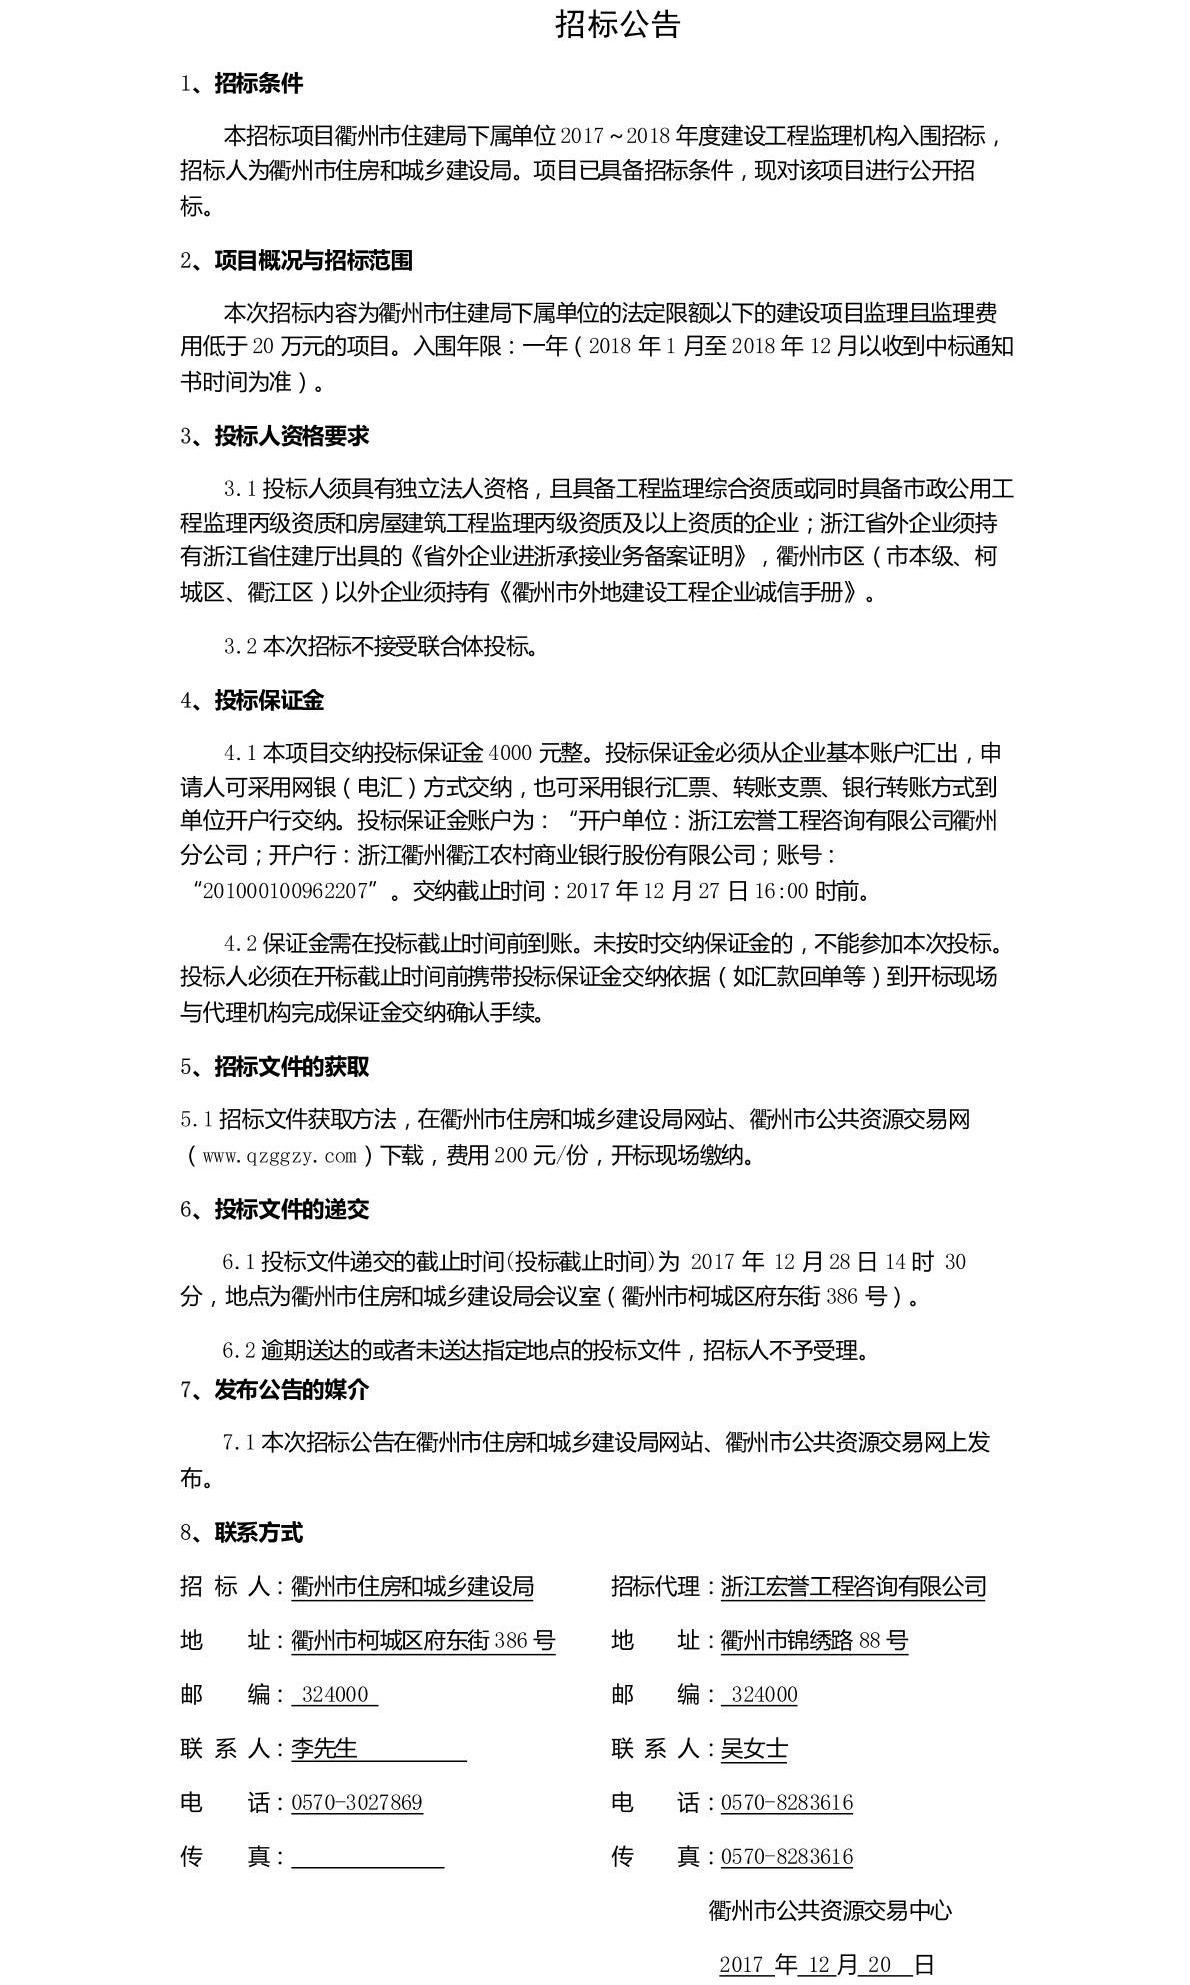 衢州市住建局下属单位2017~2018年度建设工